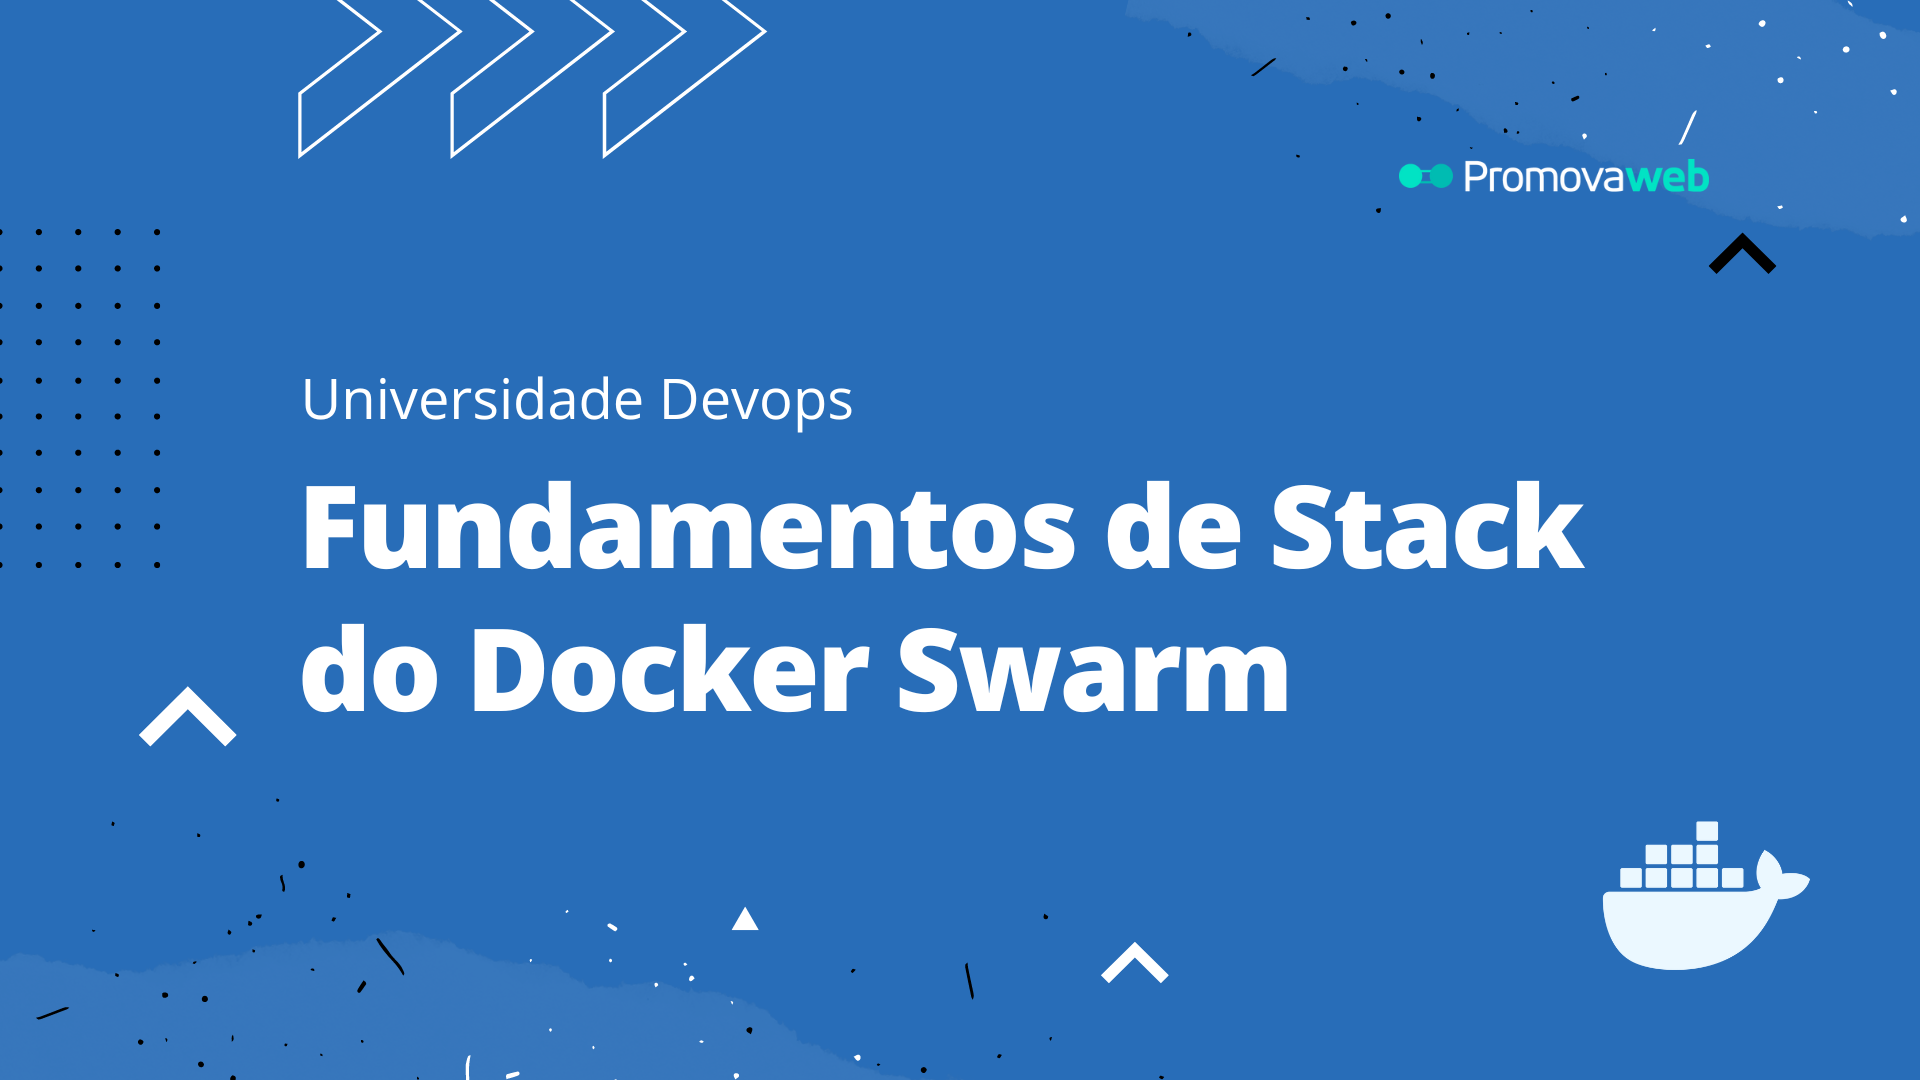 Fundamentos de Stack do Docker Swarm